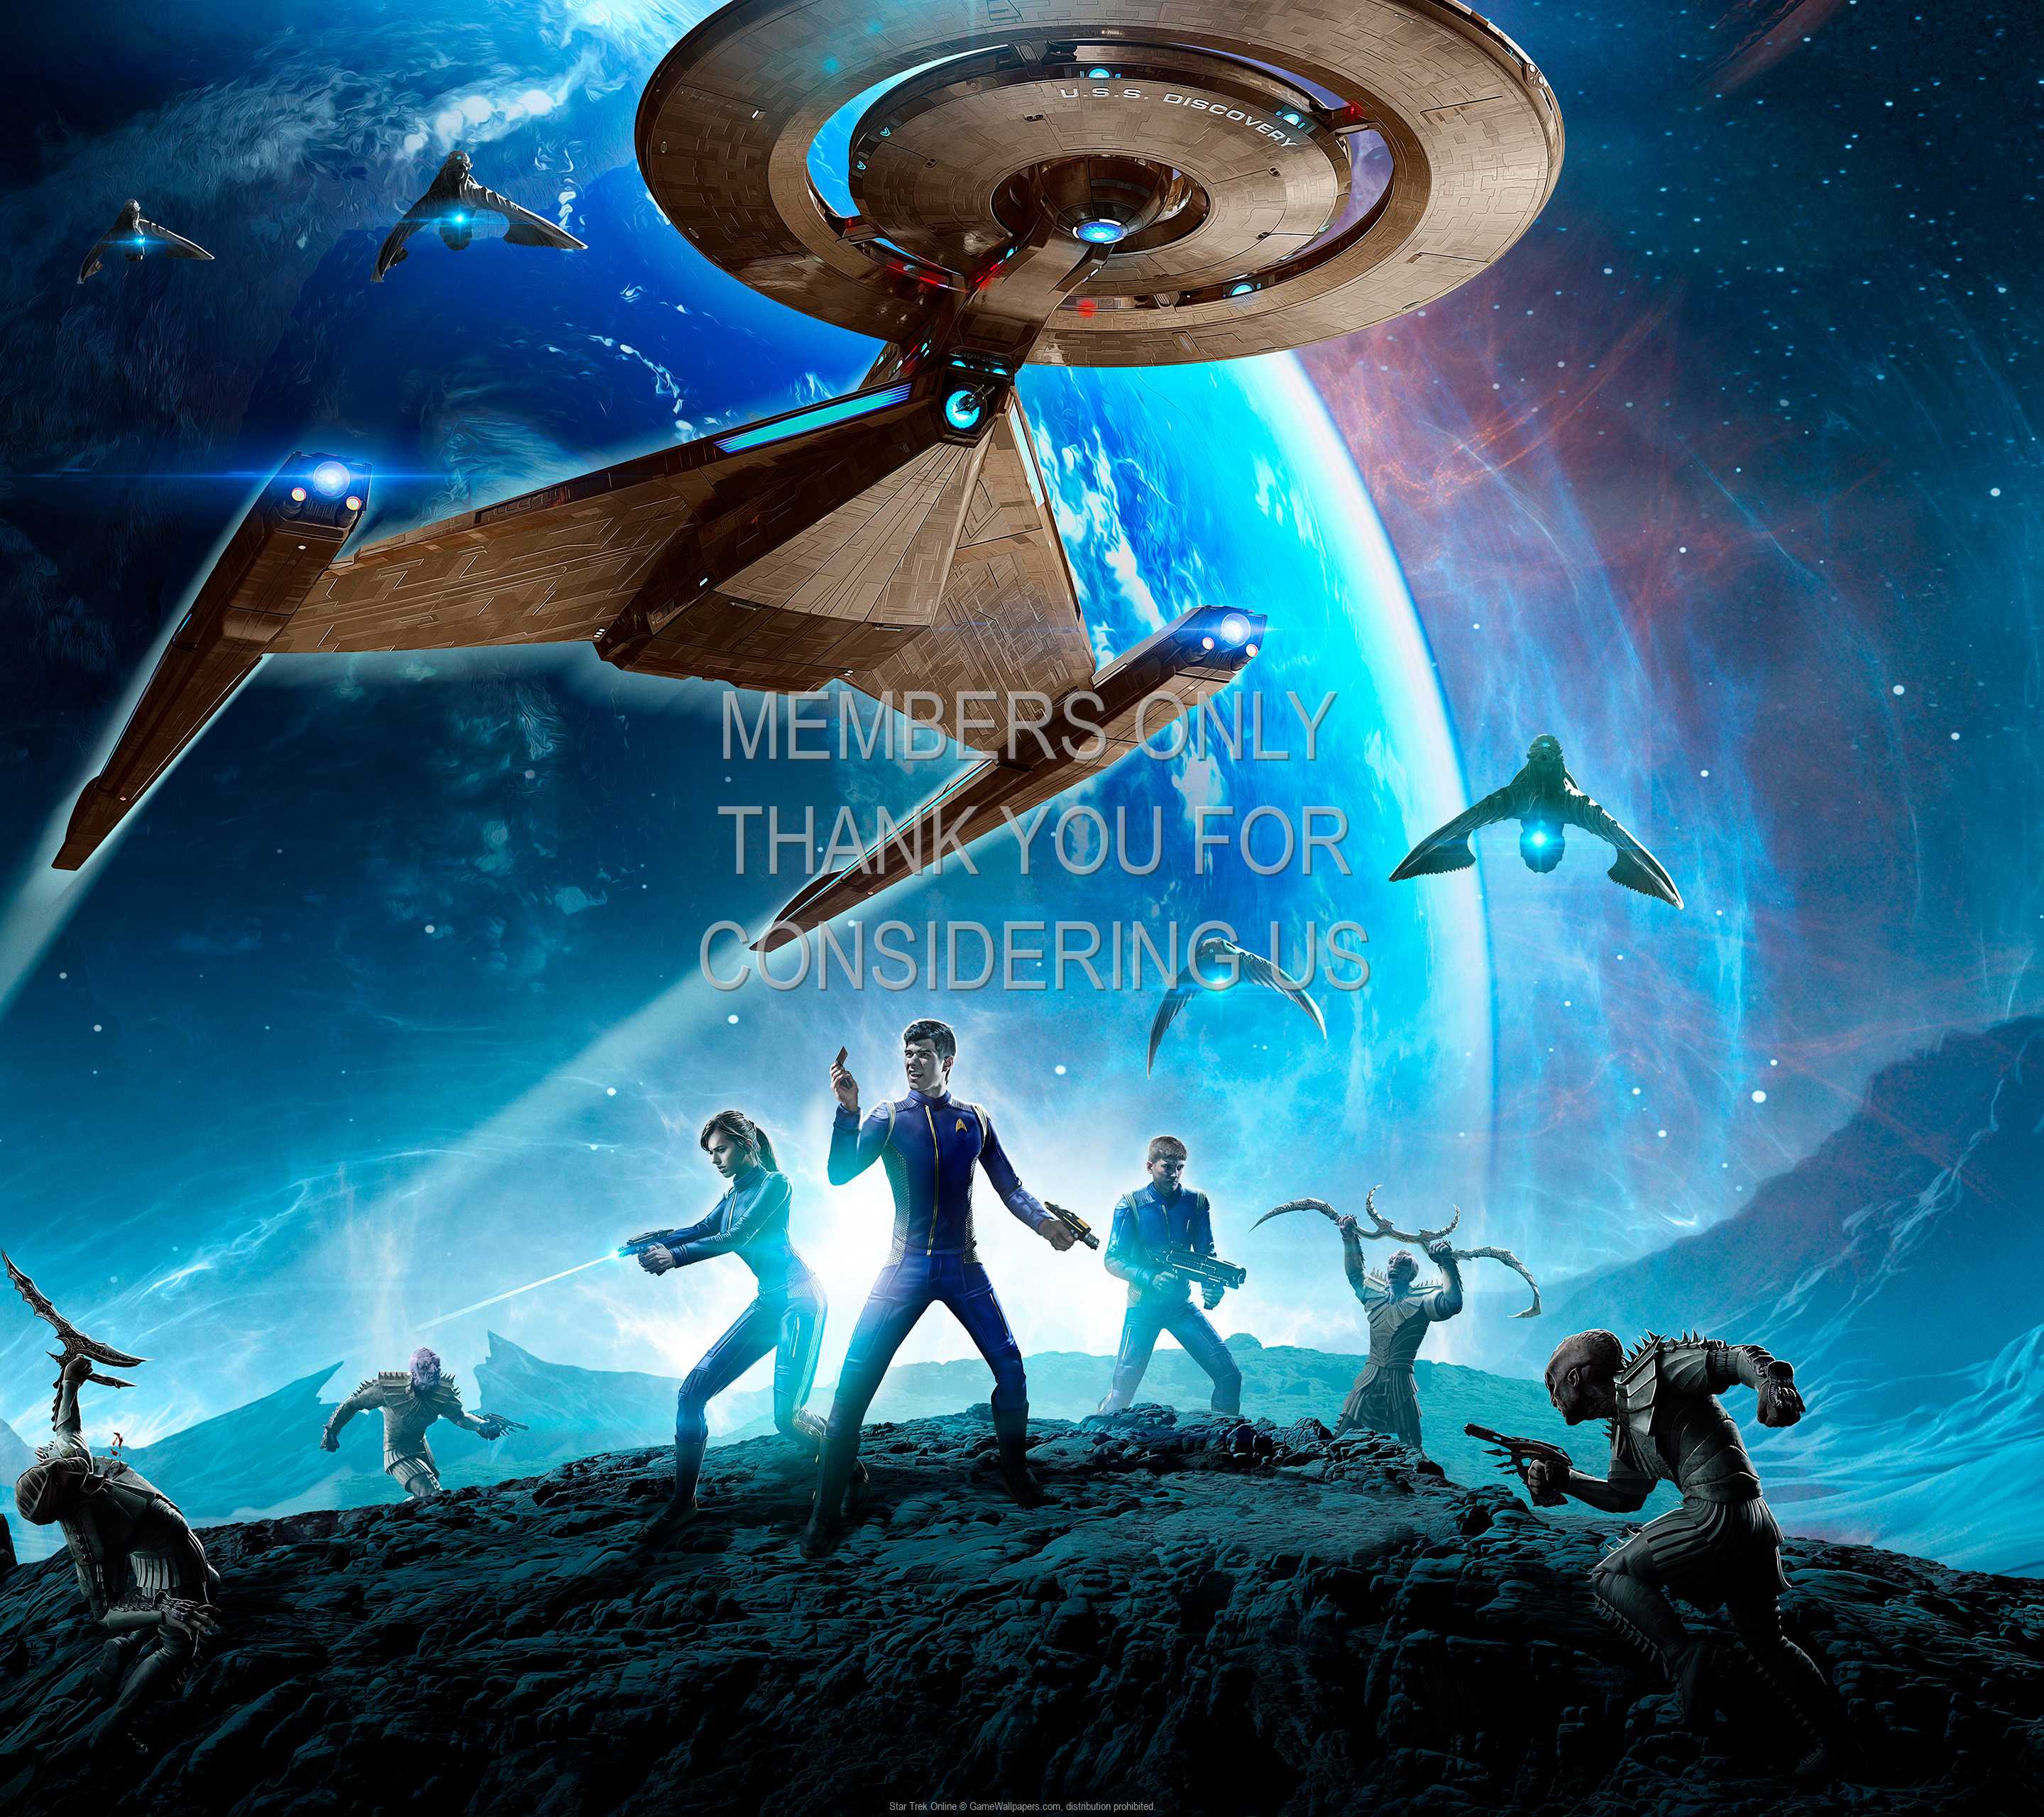 Star Trek Online 1440p Horizontal Mobile wallpaper or background 07